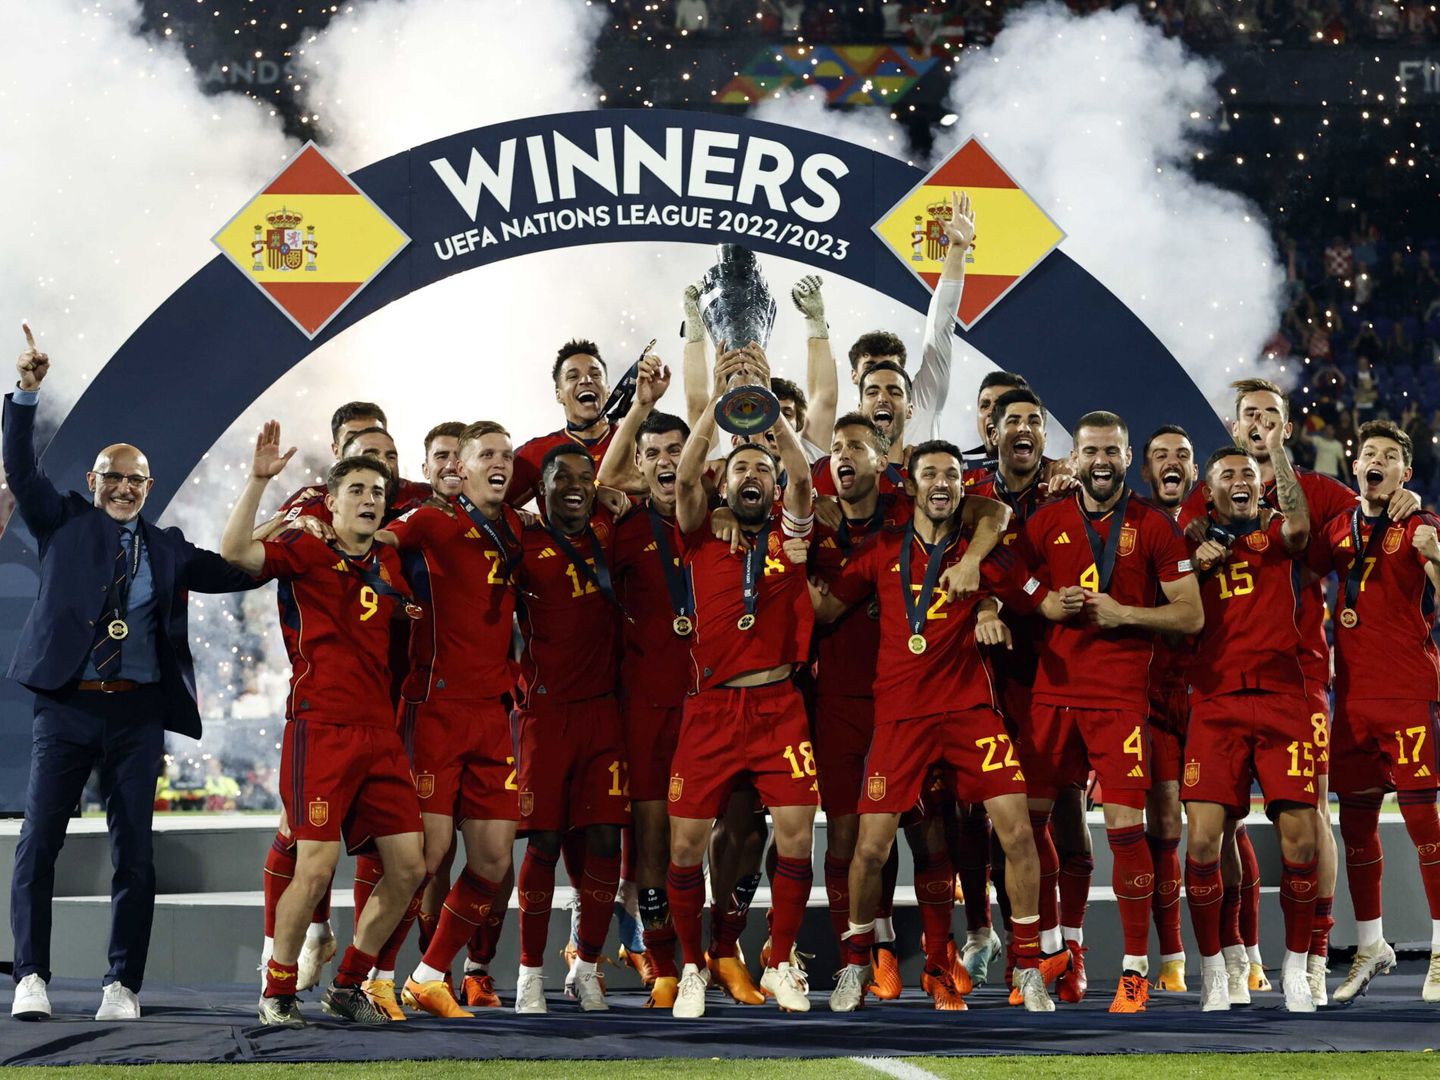 Jordi Alba levanta el título de la UEFA Nations League 2022/2023 (EFE/EPA/MAURICE VAN STEEN).